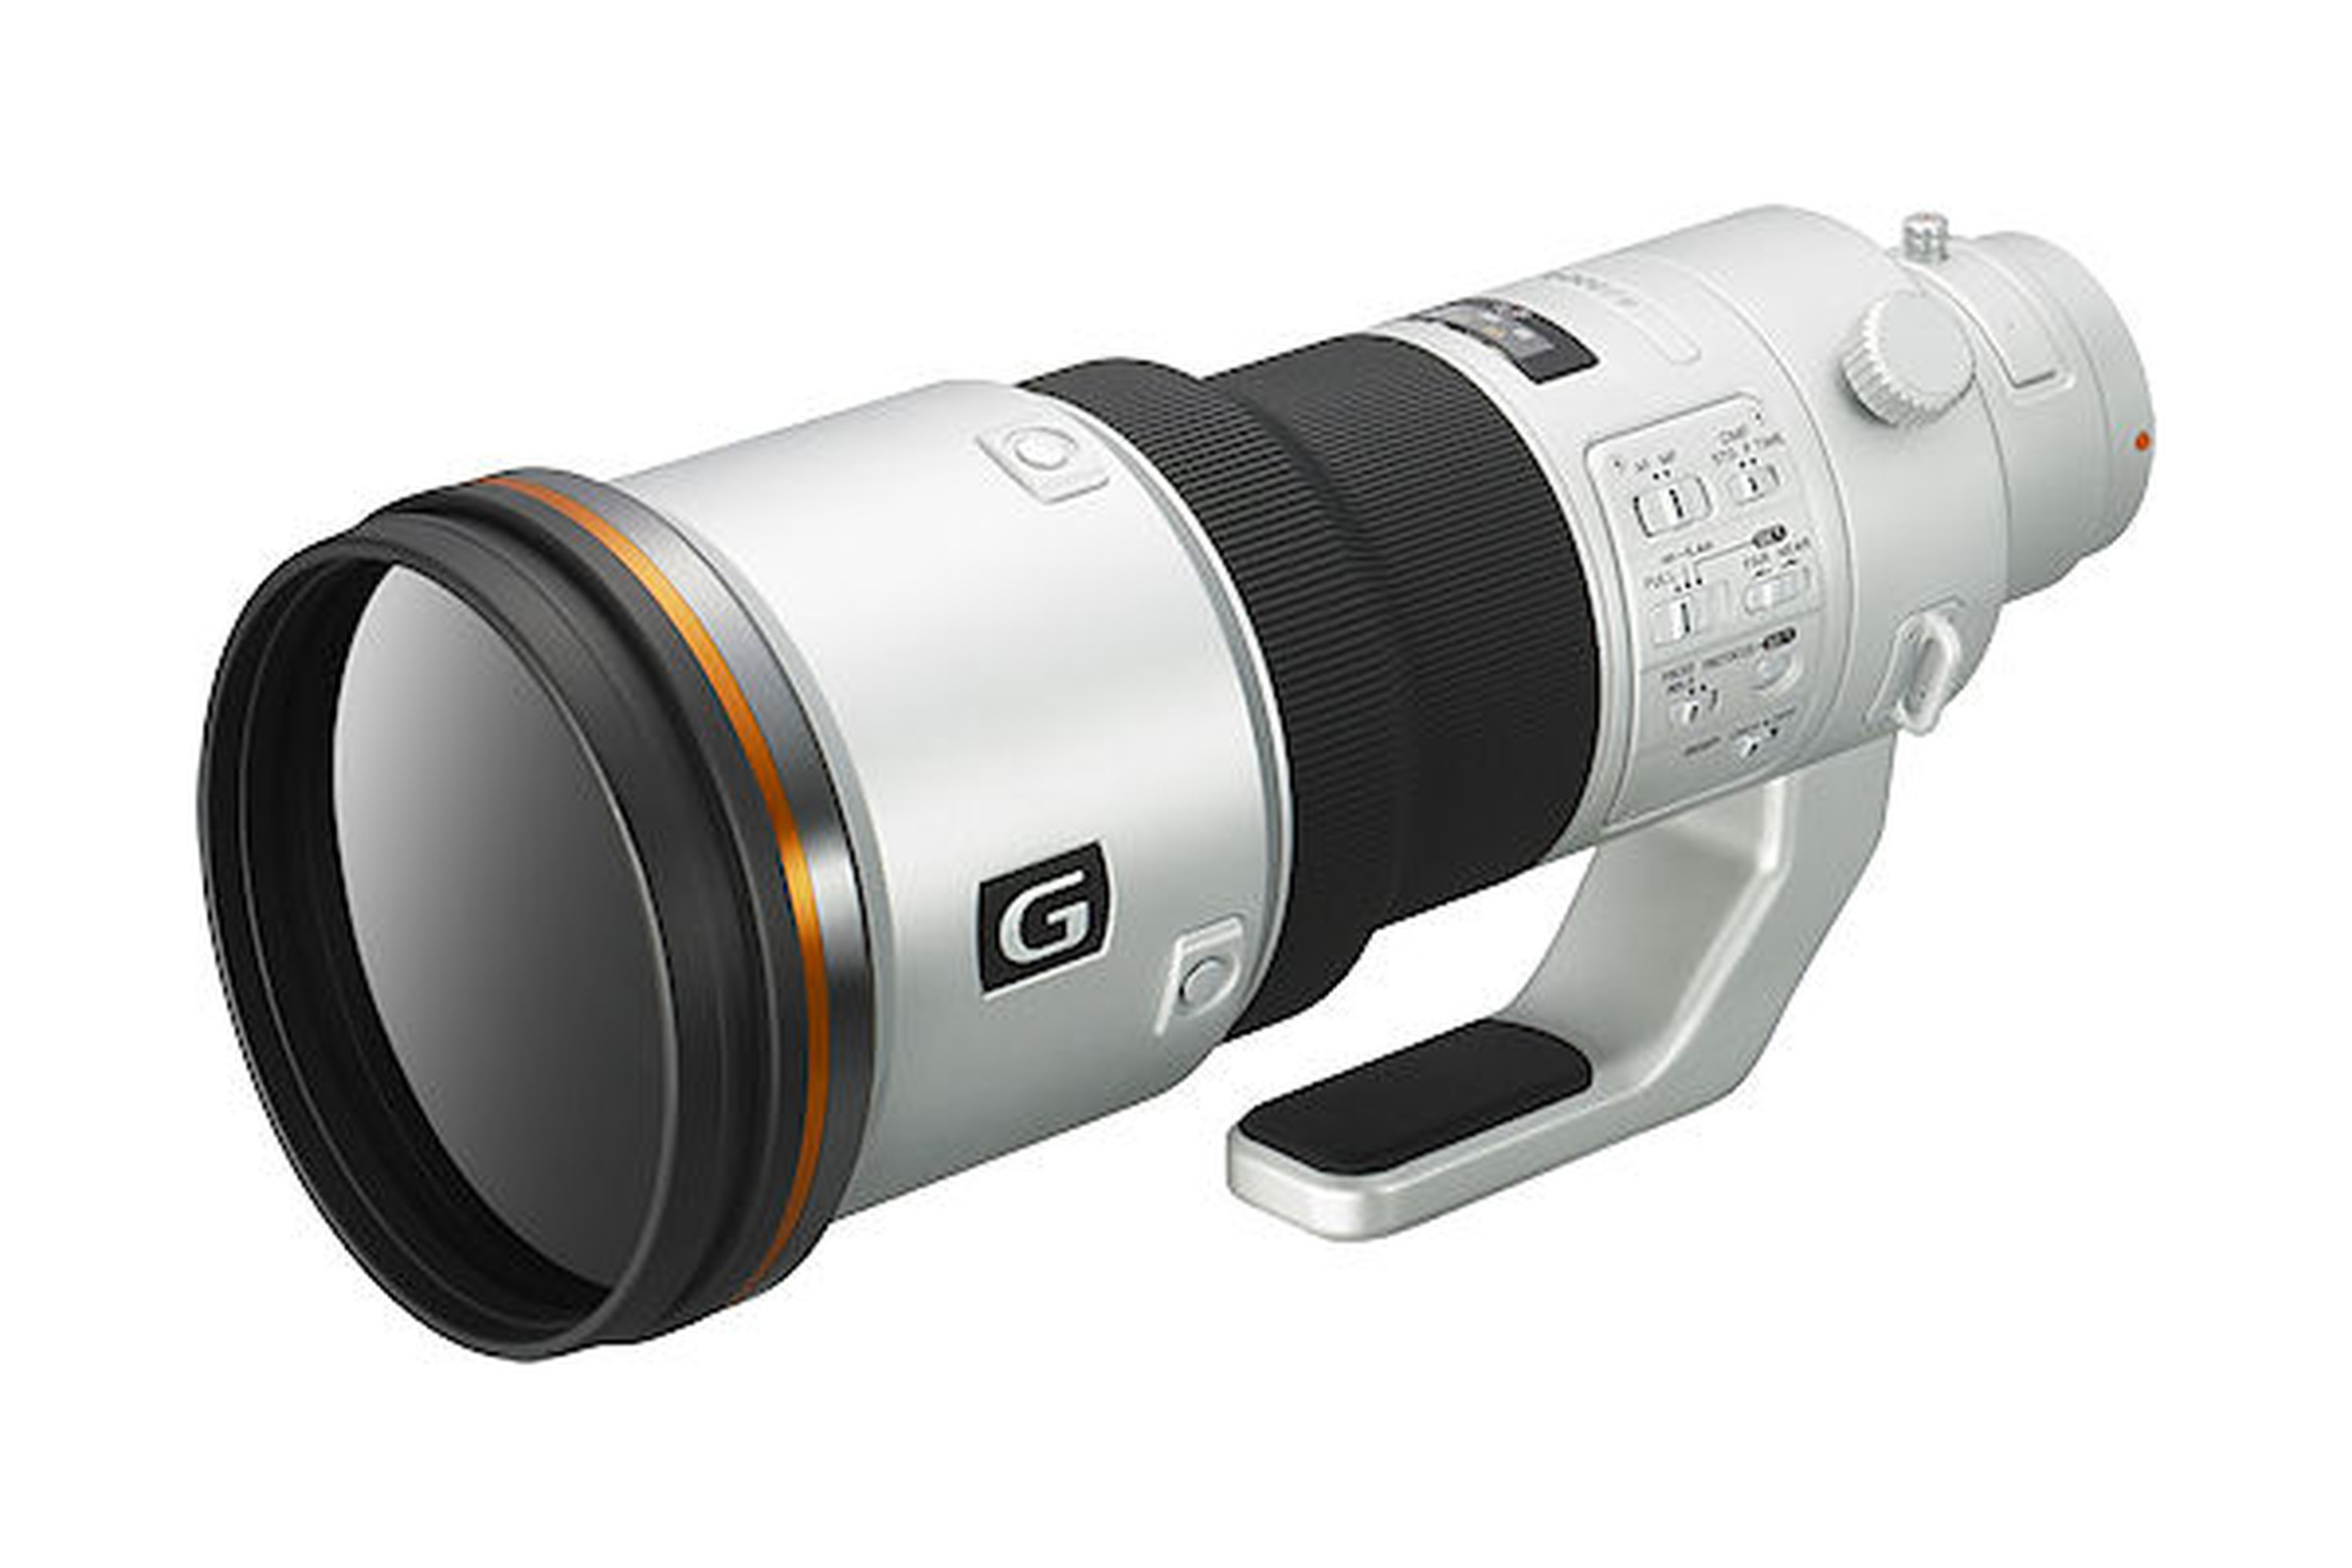 Sony 500mm lens